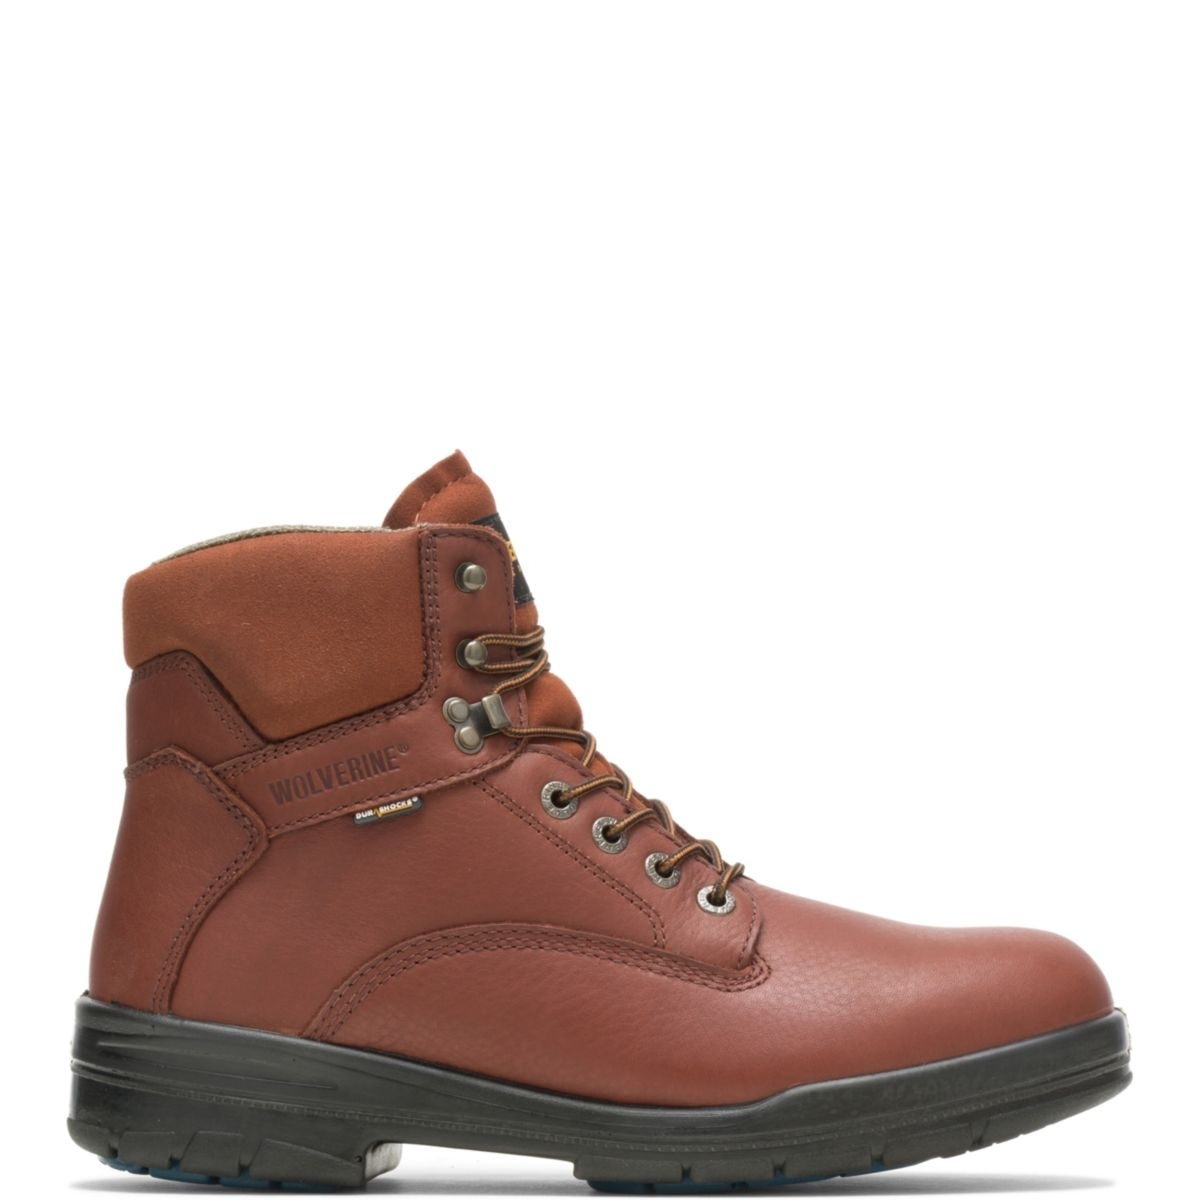 WOLVERINE Men's 6 DuraShocksÂ® Steel Toe Direct-Attach Work Boot Brown - W03120 BROWN - BROWN, 8